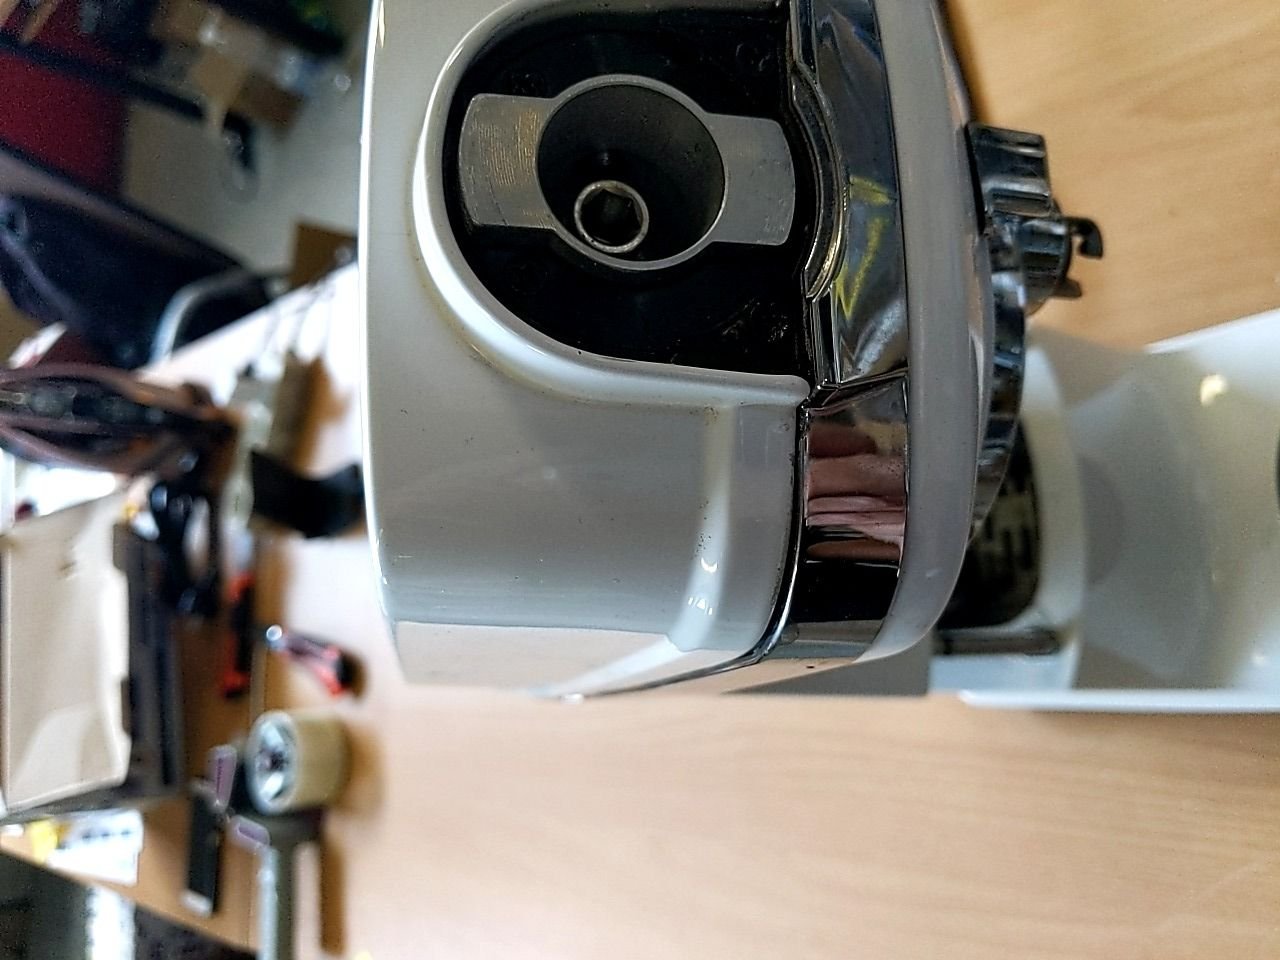 Kuchyňský robot Philco PHSM 9000